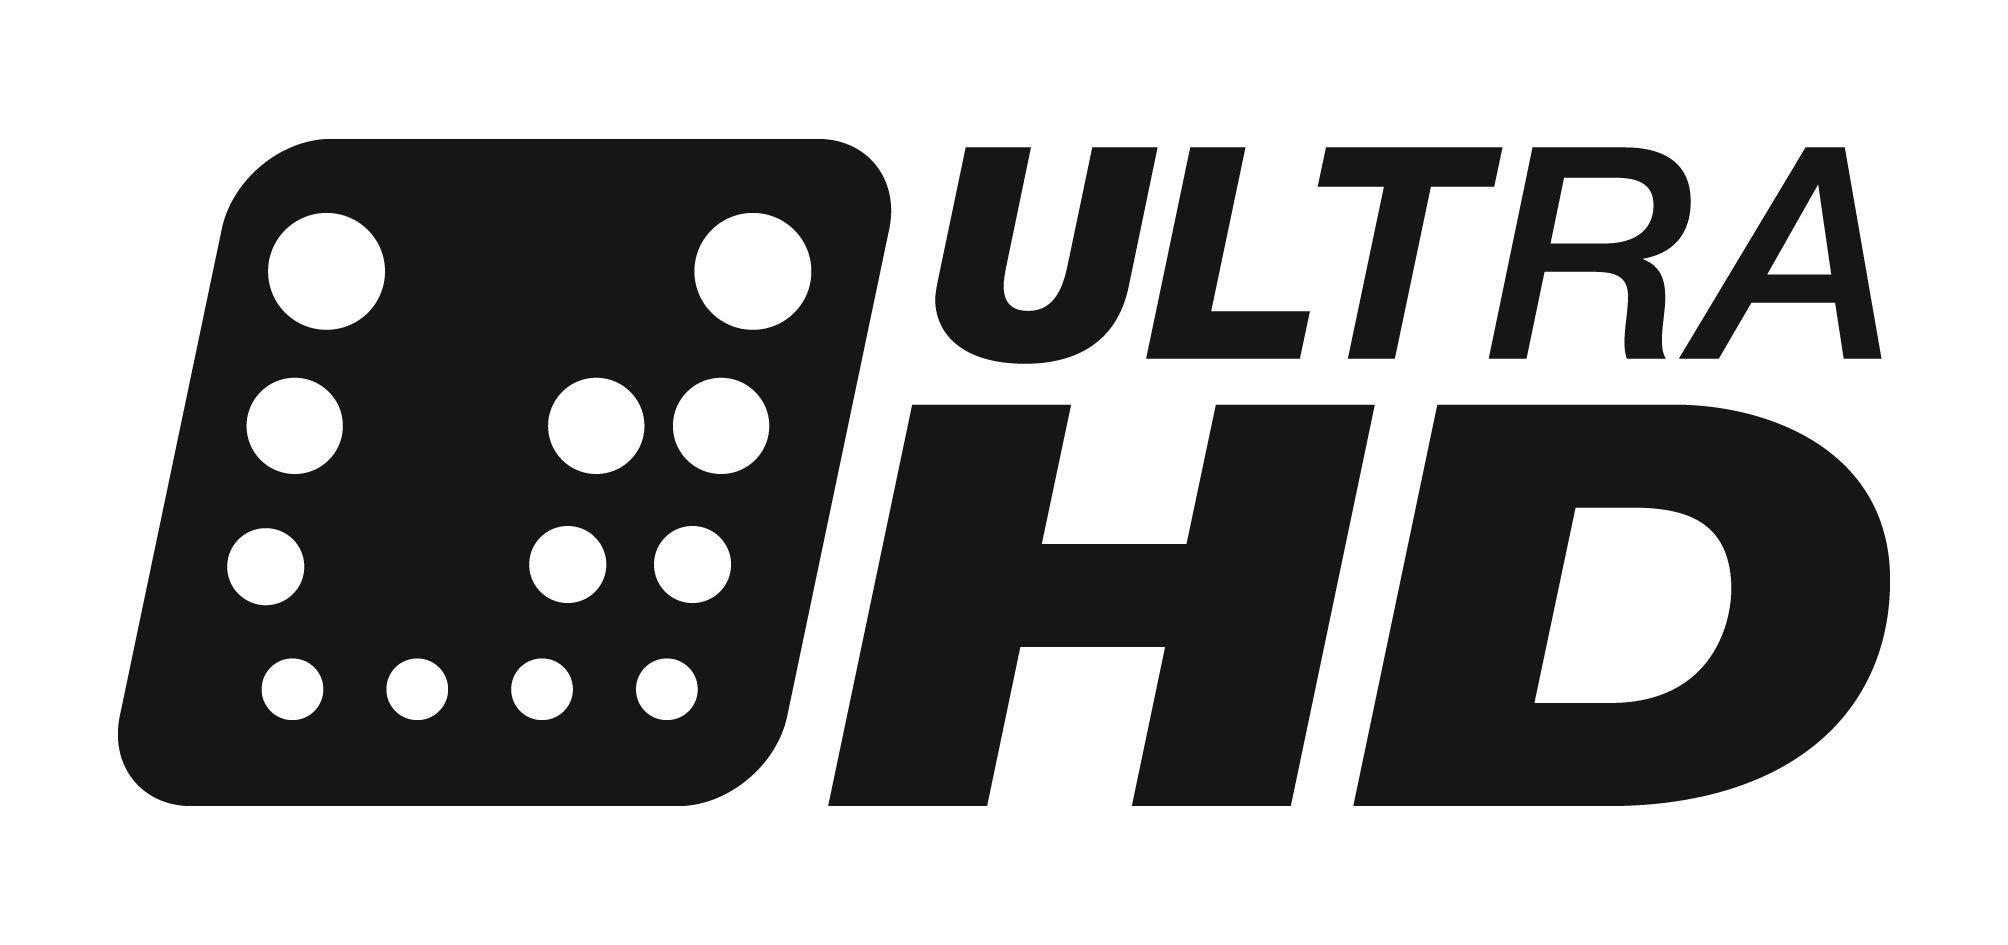 1080P Logo - Hd Logos